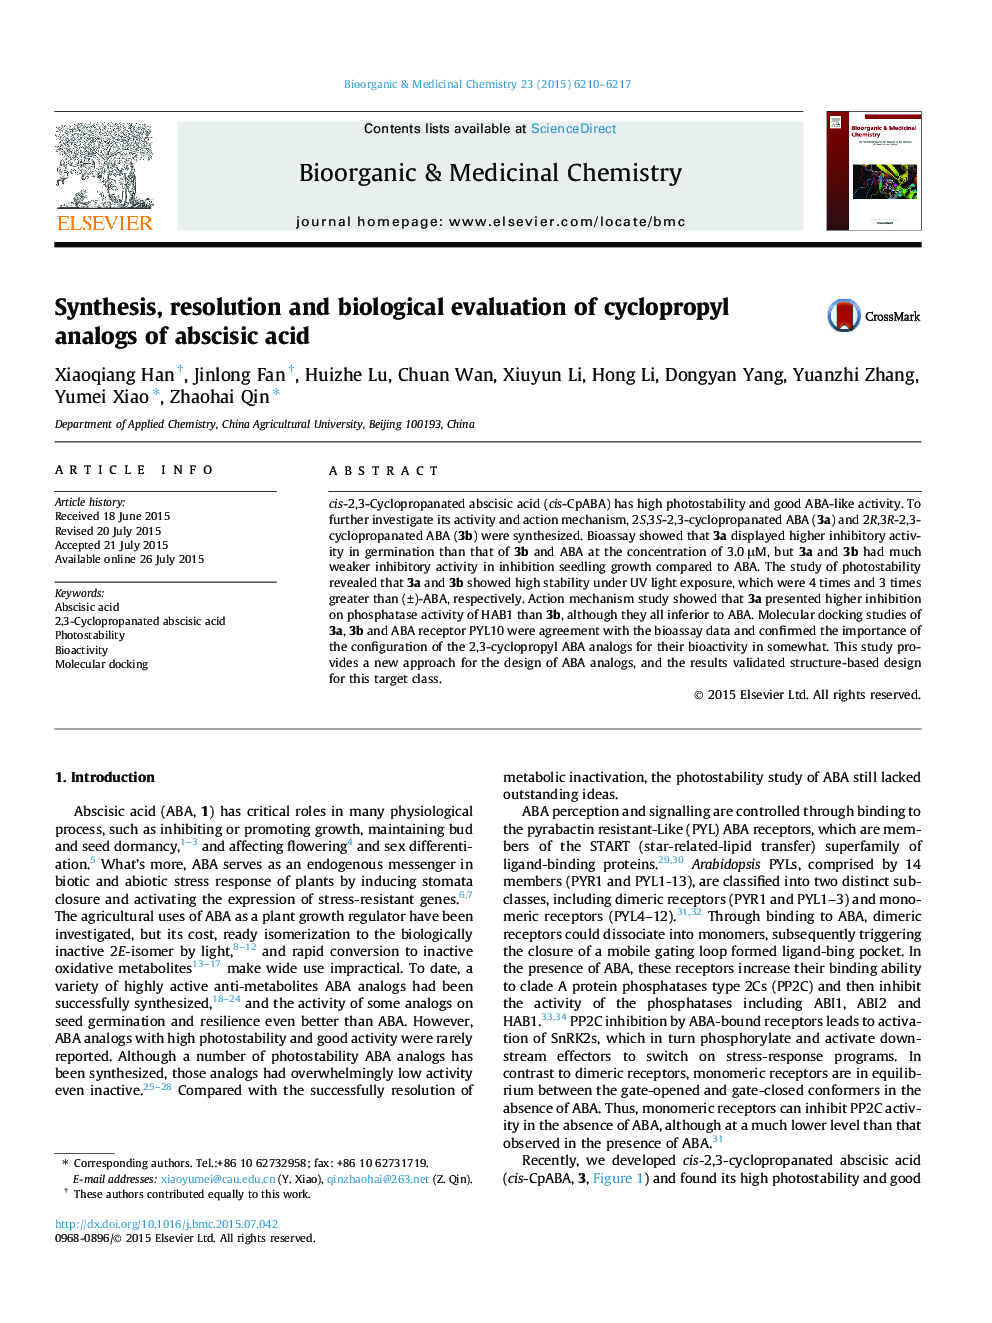 سنتز، وضوح و ارزیابی بیولوژیکی آنالوگهای سیکلوپروپیلیک اسید واکنش دهنده 